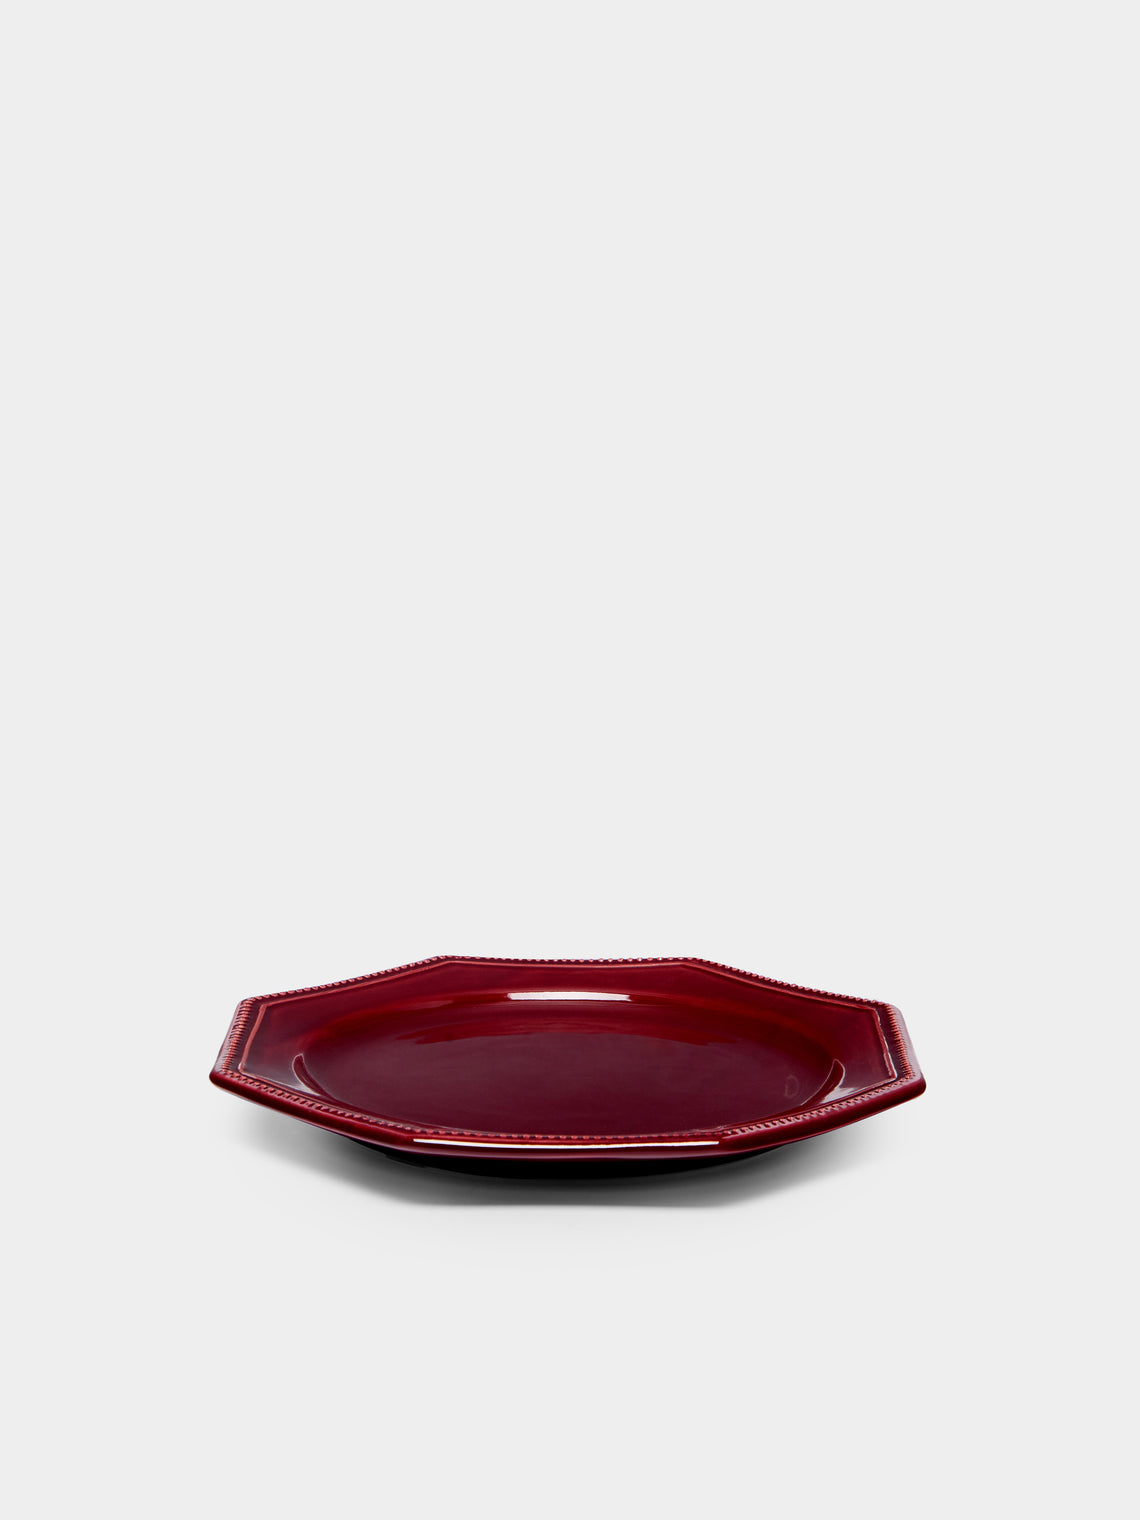 Maison Pichon Uzès - Louis XVI Hand-Glazed Ceramic Side Plates (Set of 4) -  - ABASK